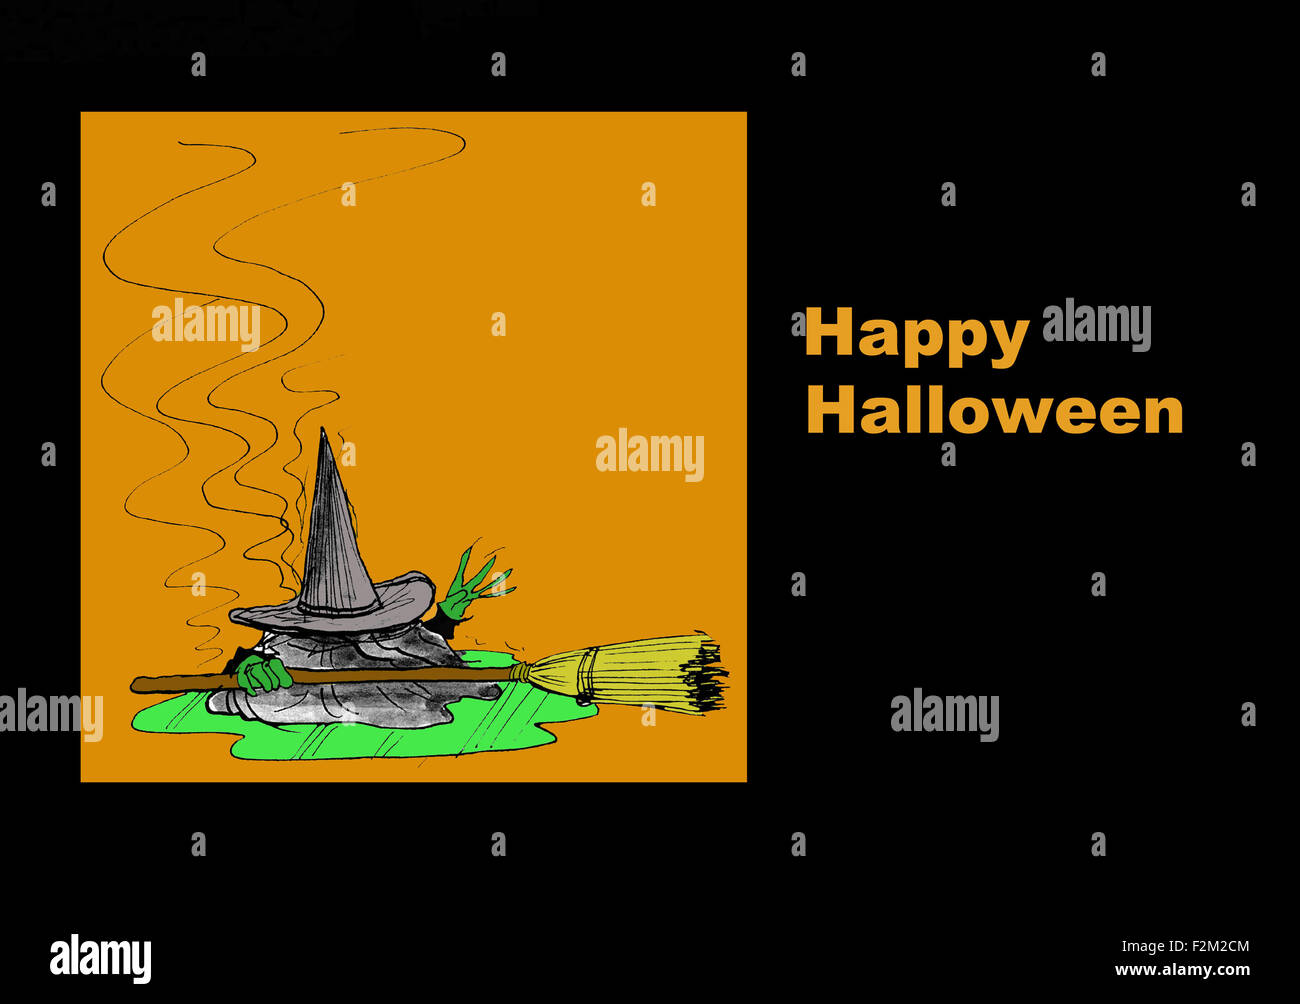 Halloween Darstellung der böse Hexe schmelzen und den Worten: "Happy Halloween". Stockfoto